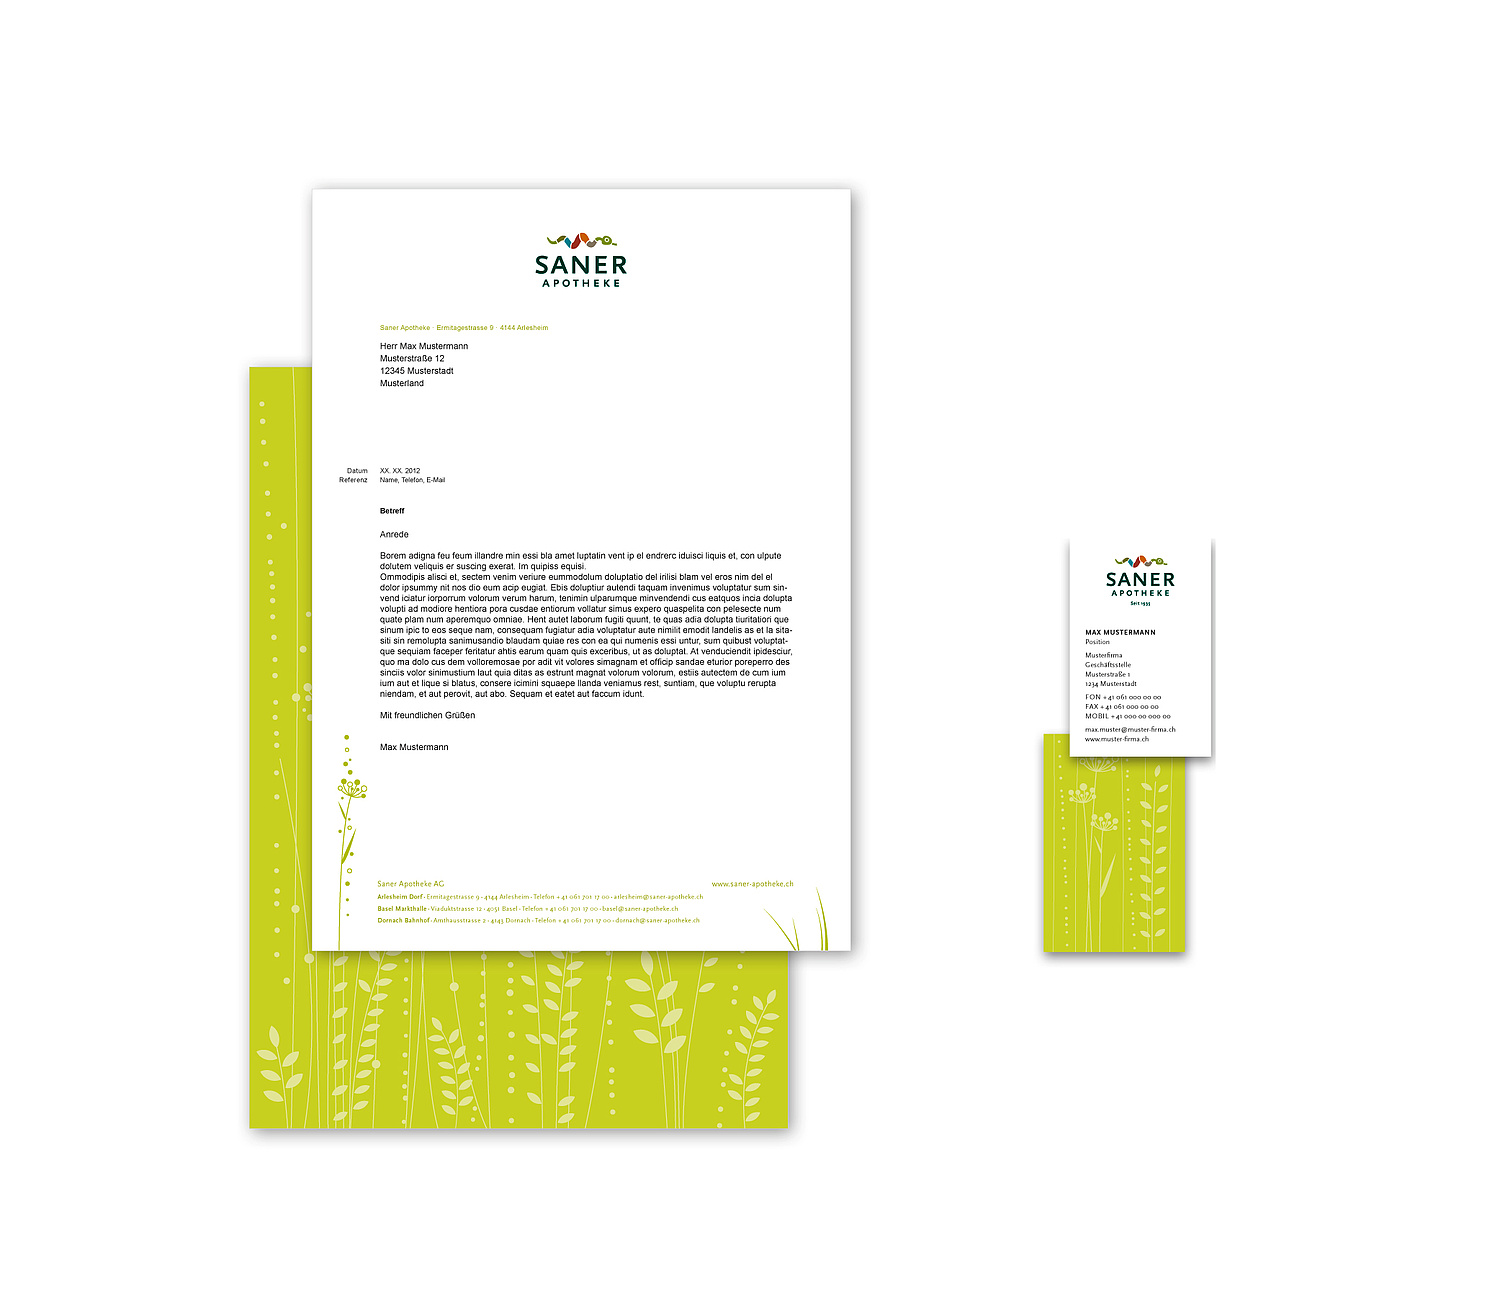 Briefpapier weiß mit Logo oben und Beispieltext, Rückseite in grün mit Grafikelementen Wiese ebenso bei Rückseite Visitenkarte (© Papenfuss | Atelier)